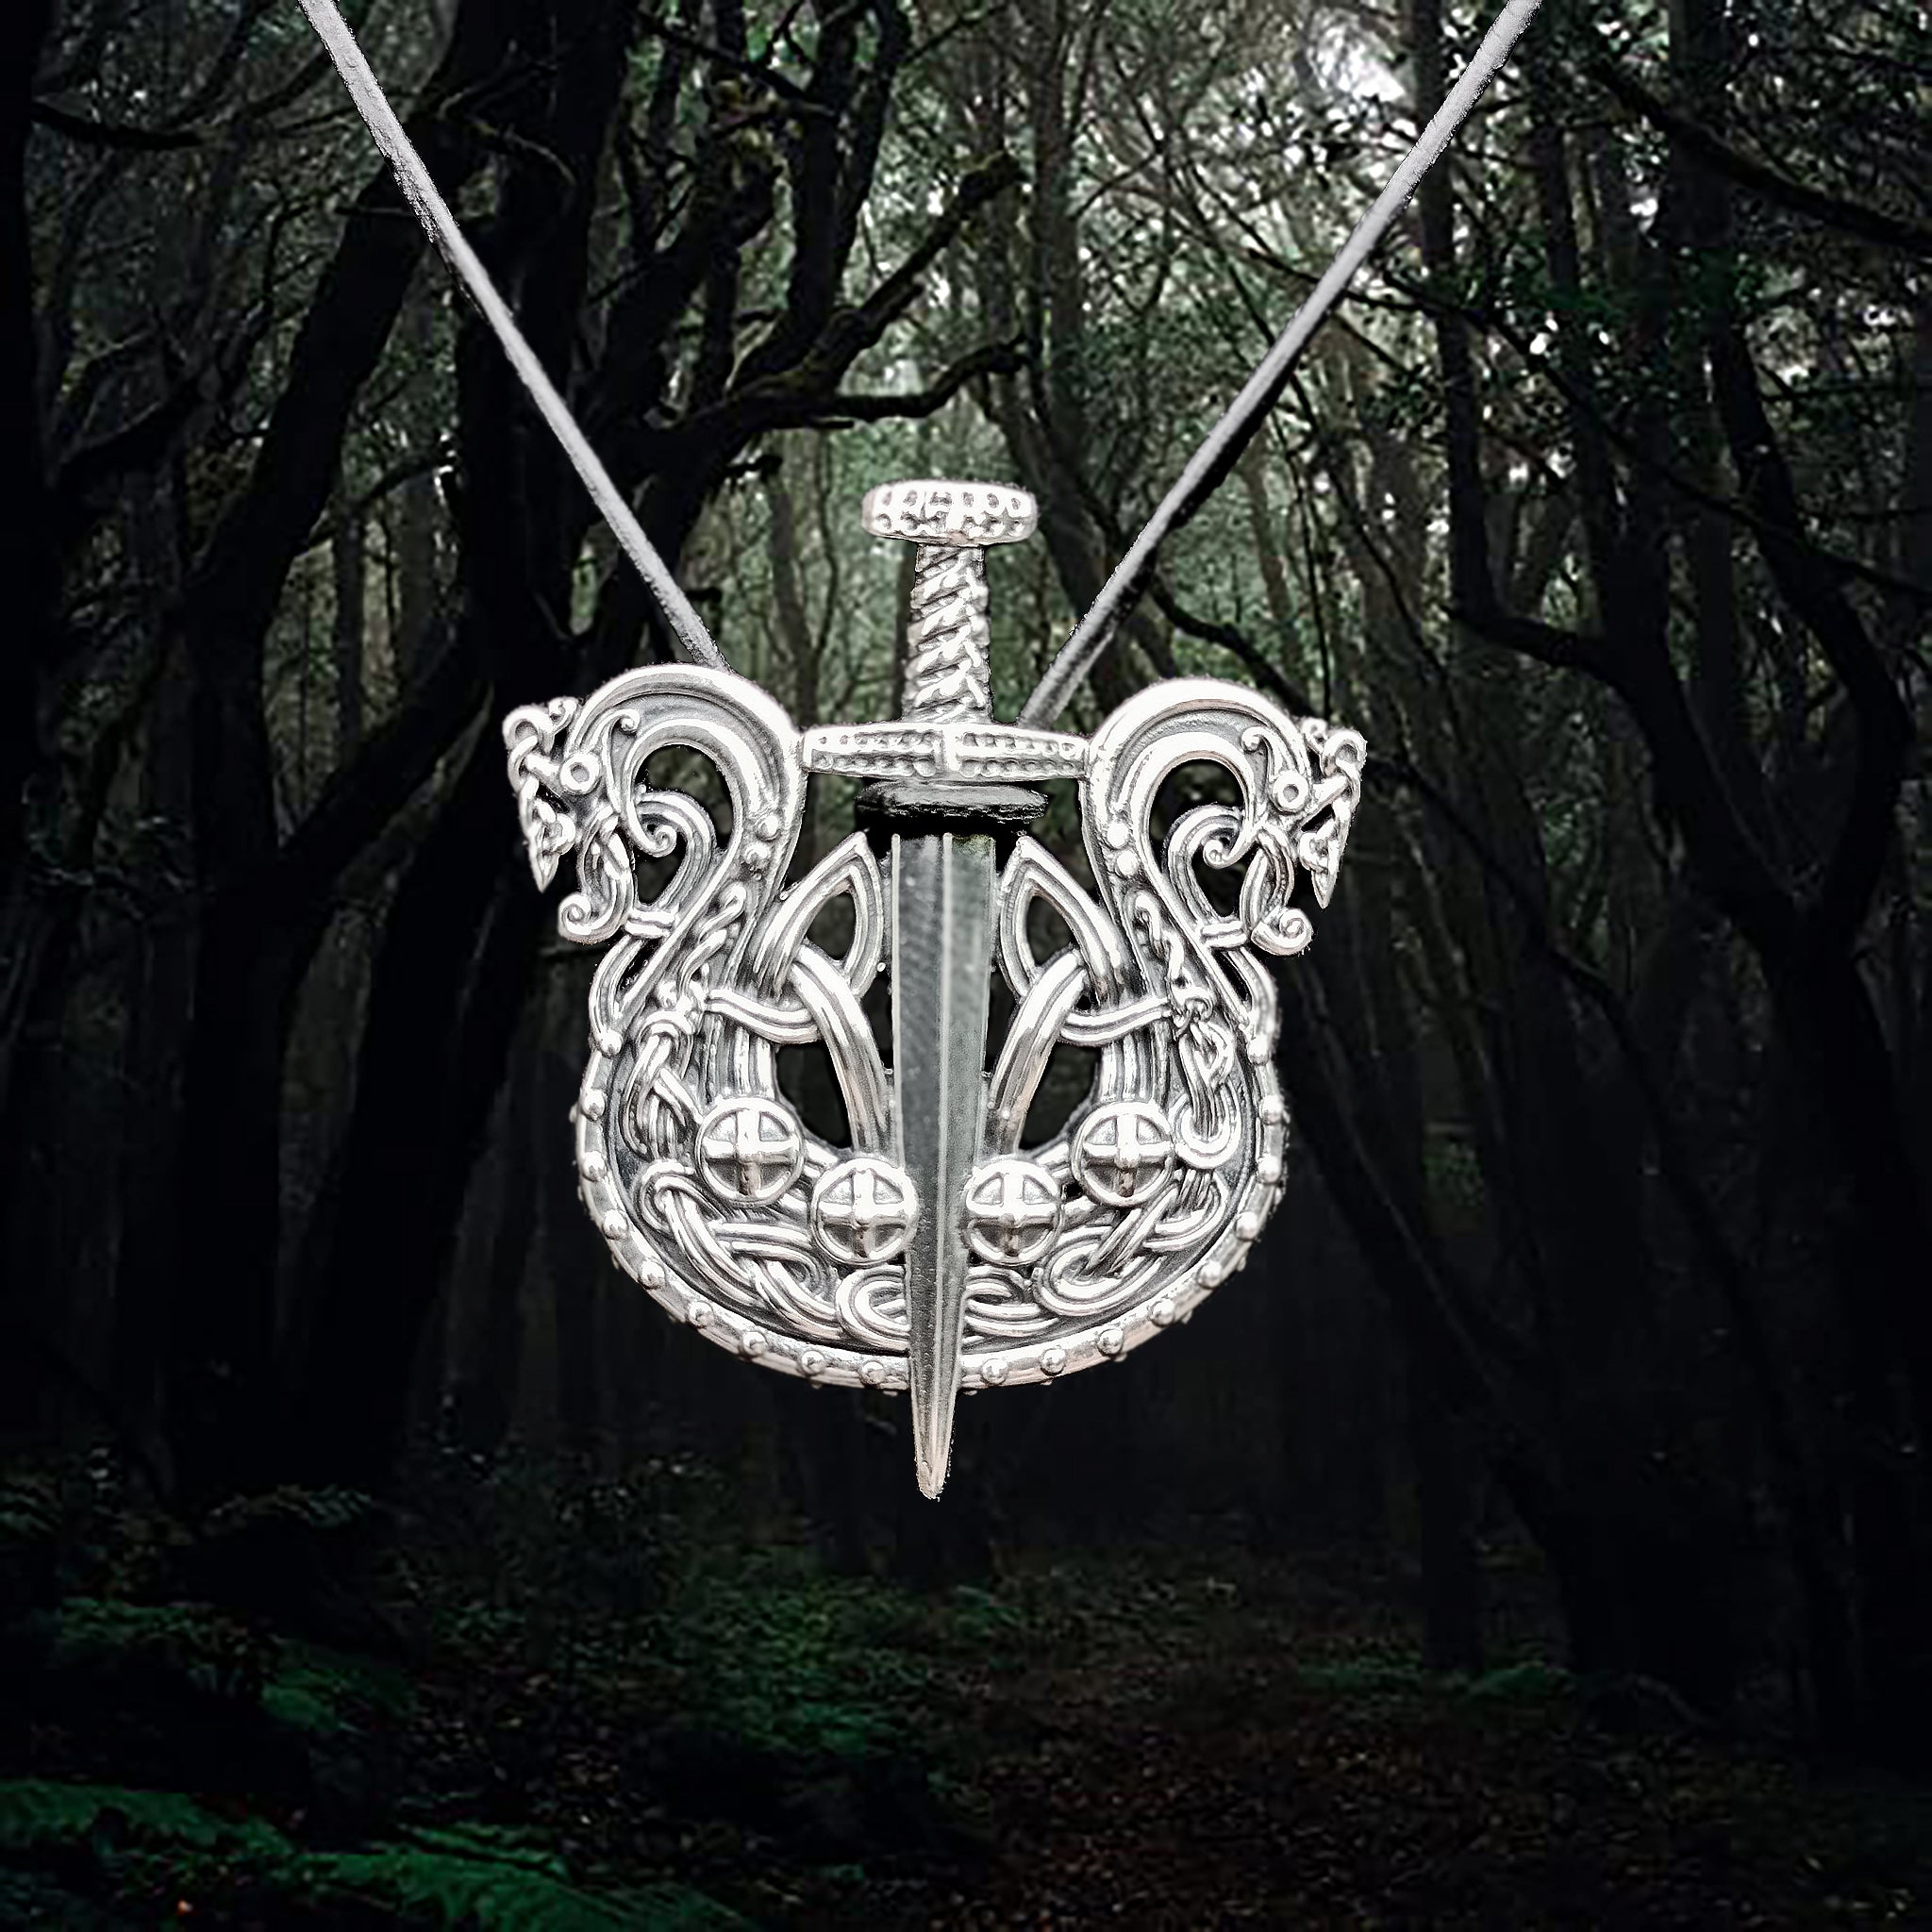 Silver Drakkar Viking Ship with Sword Pendant - Viking Jewelry